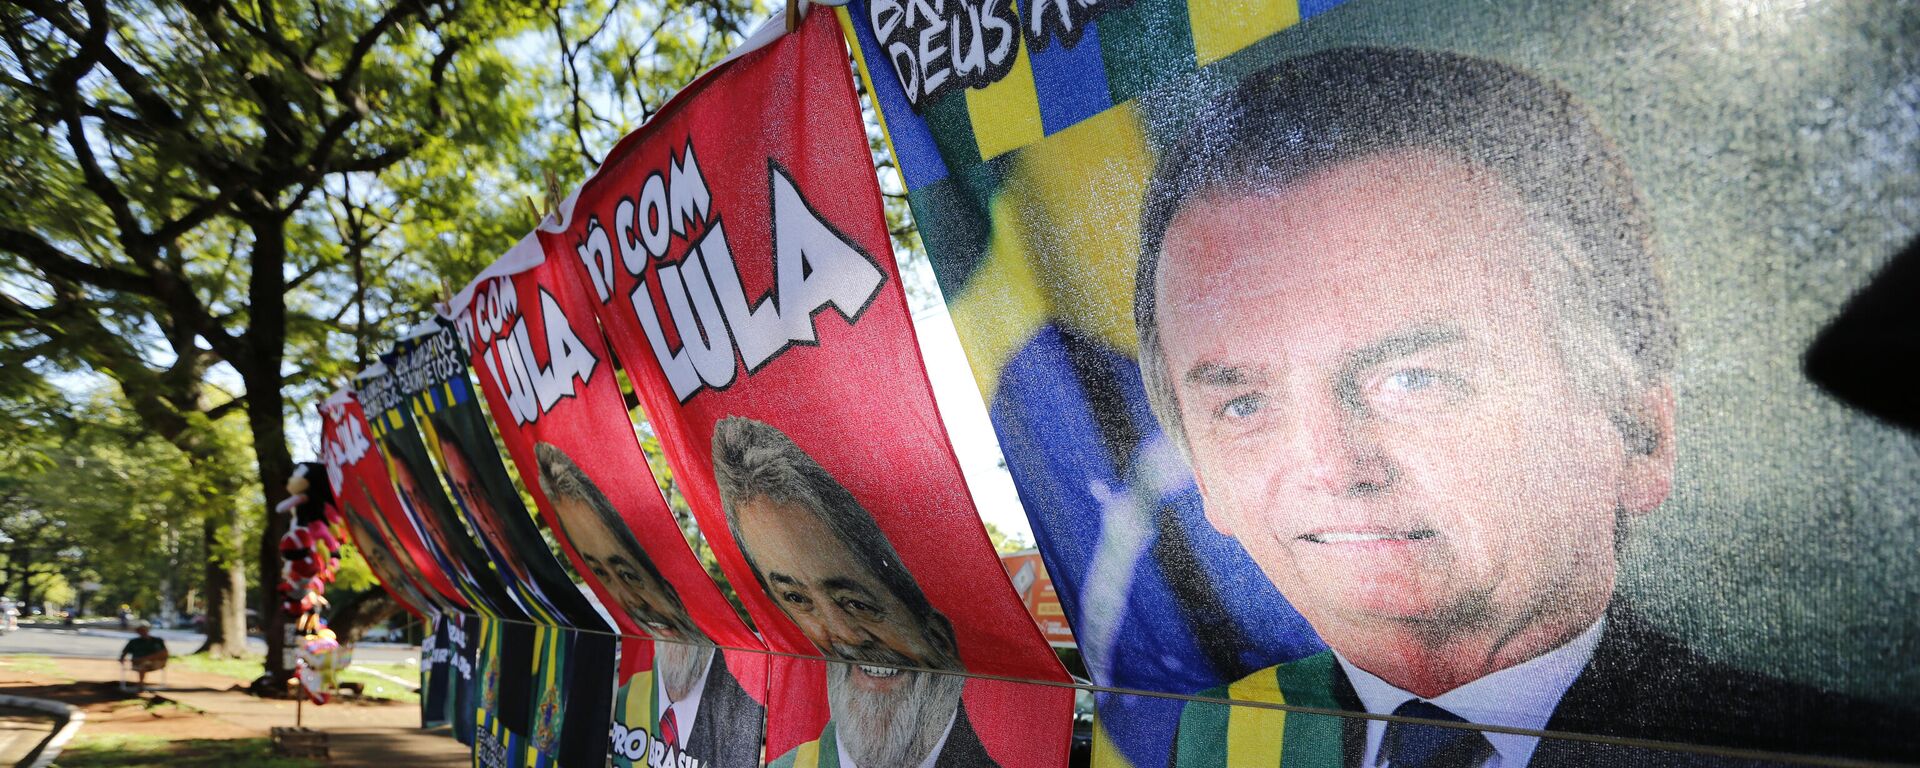 Vendedor ambulante vende toalhas com fotos do presidente Jair Bolsonaro (PL) e do ex-presidente Luiz Inácio Lula da Silva (PT) em Foz do Iguaçu (PR), em 11 de fevereiro de 2022 - Sputnik Brasil, 1920, 06.10.2022